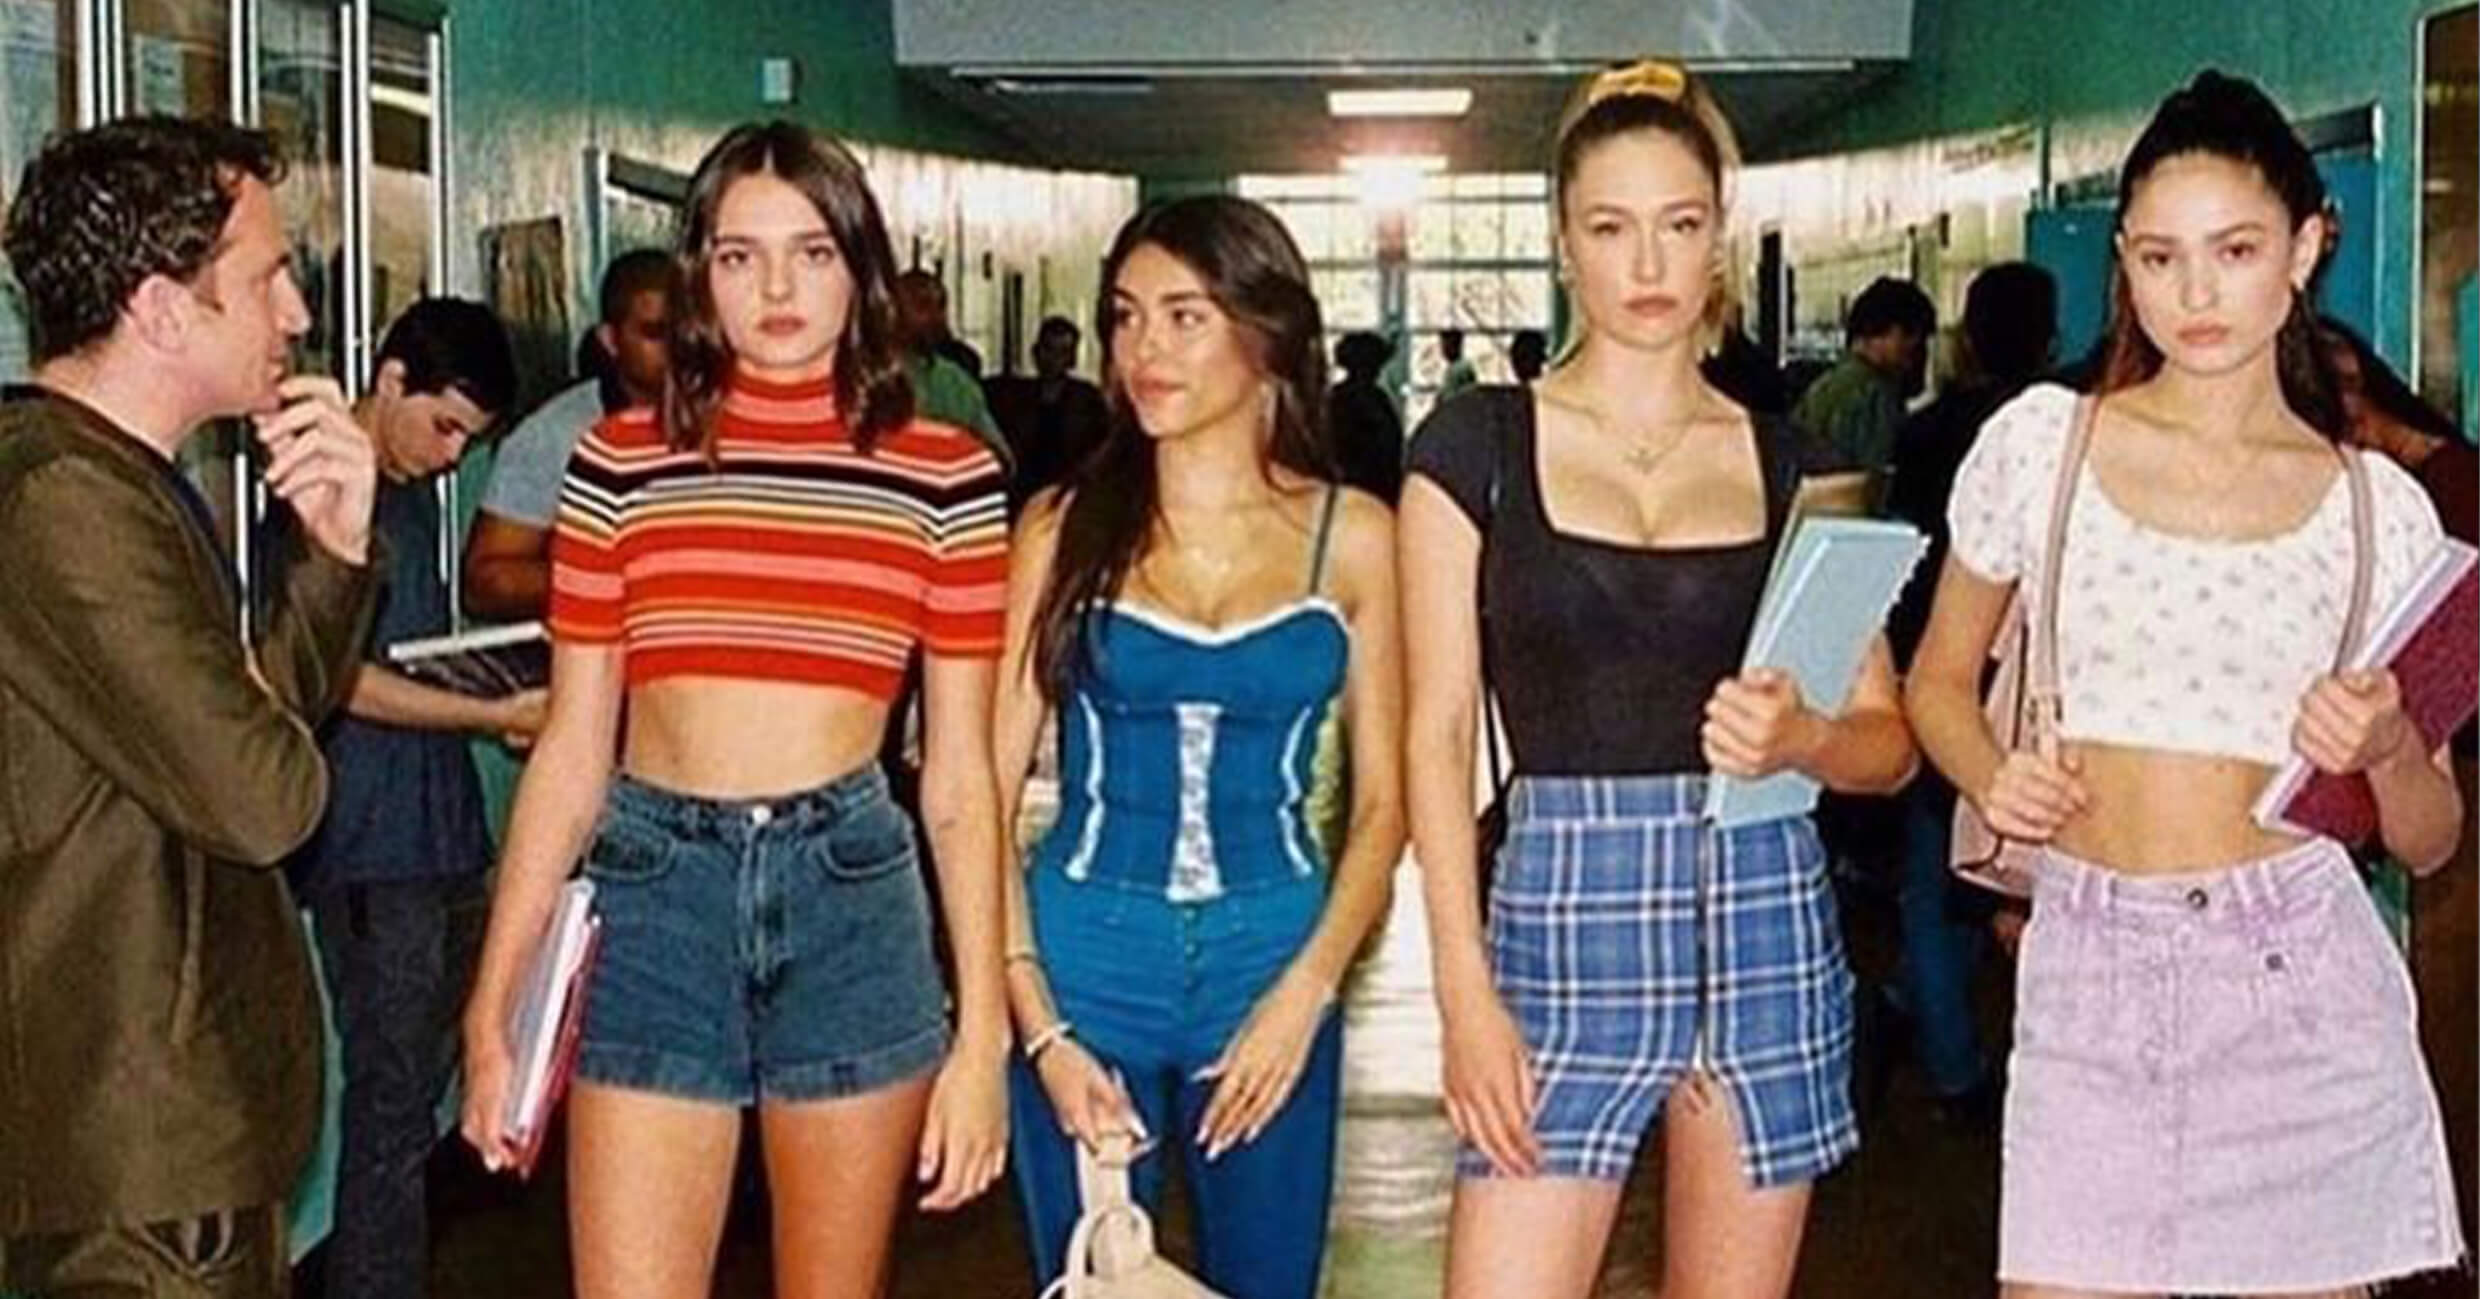 Vintage Girls Blue Jean Skort, 90s Girls Skirt Shorts, Back to